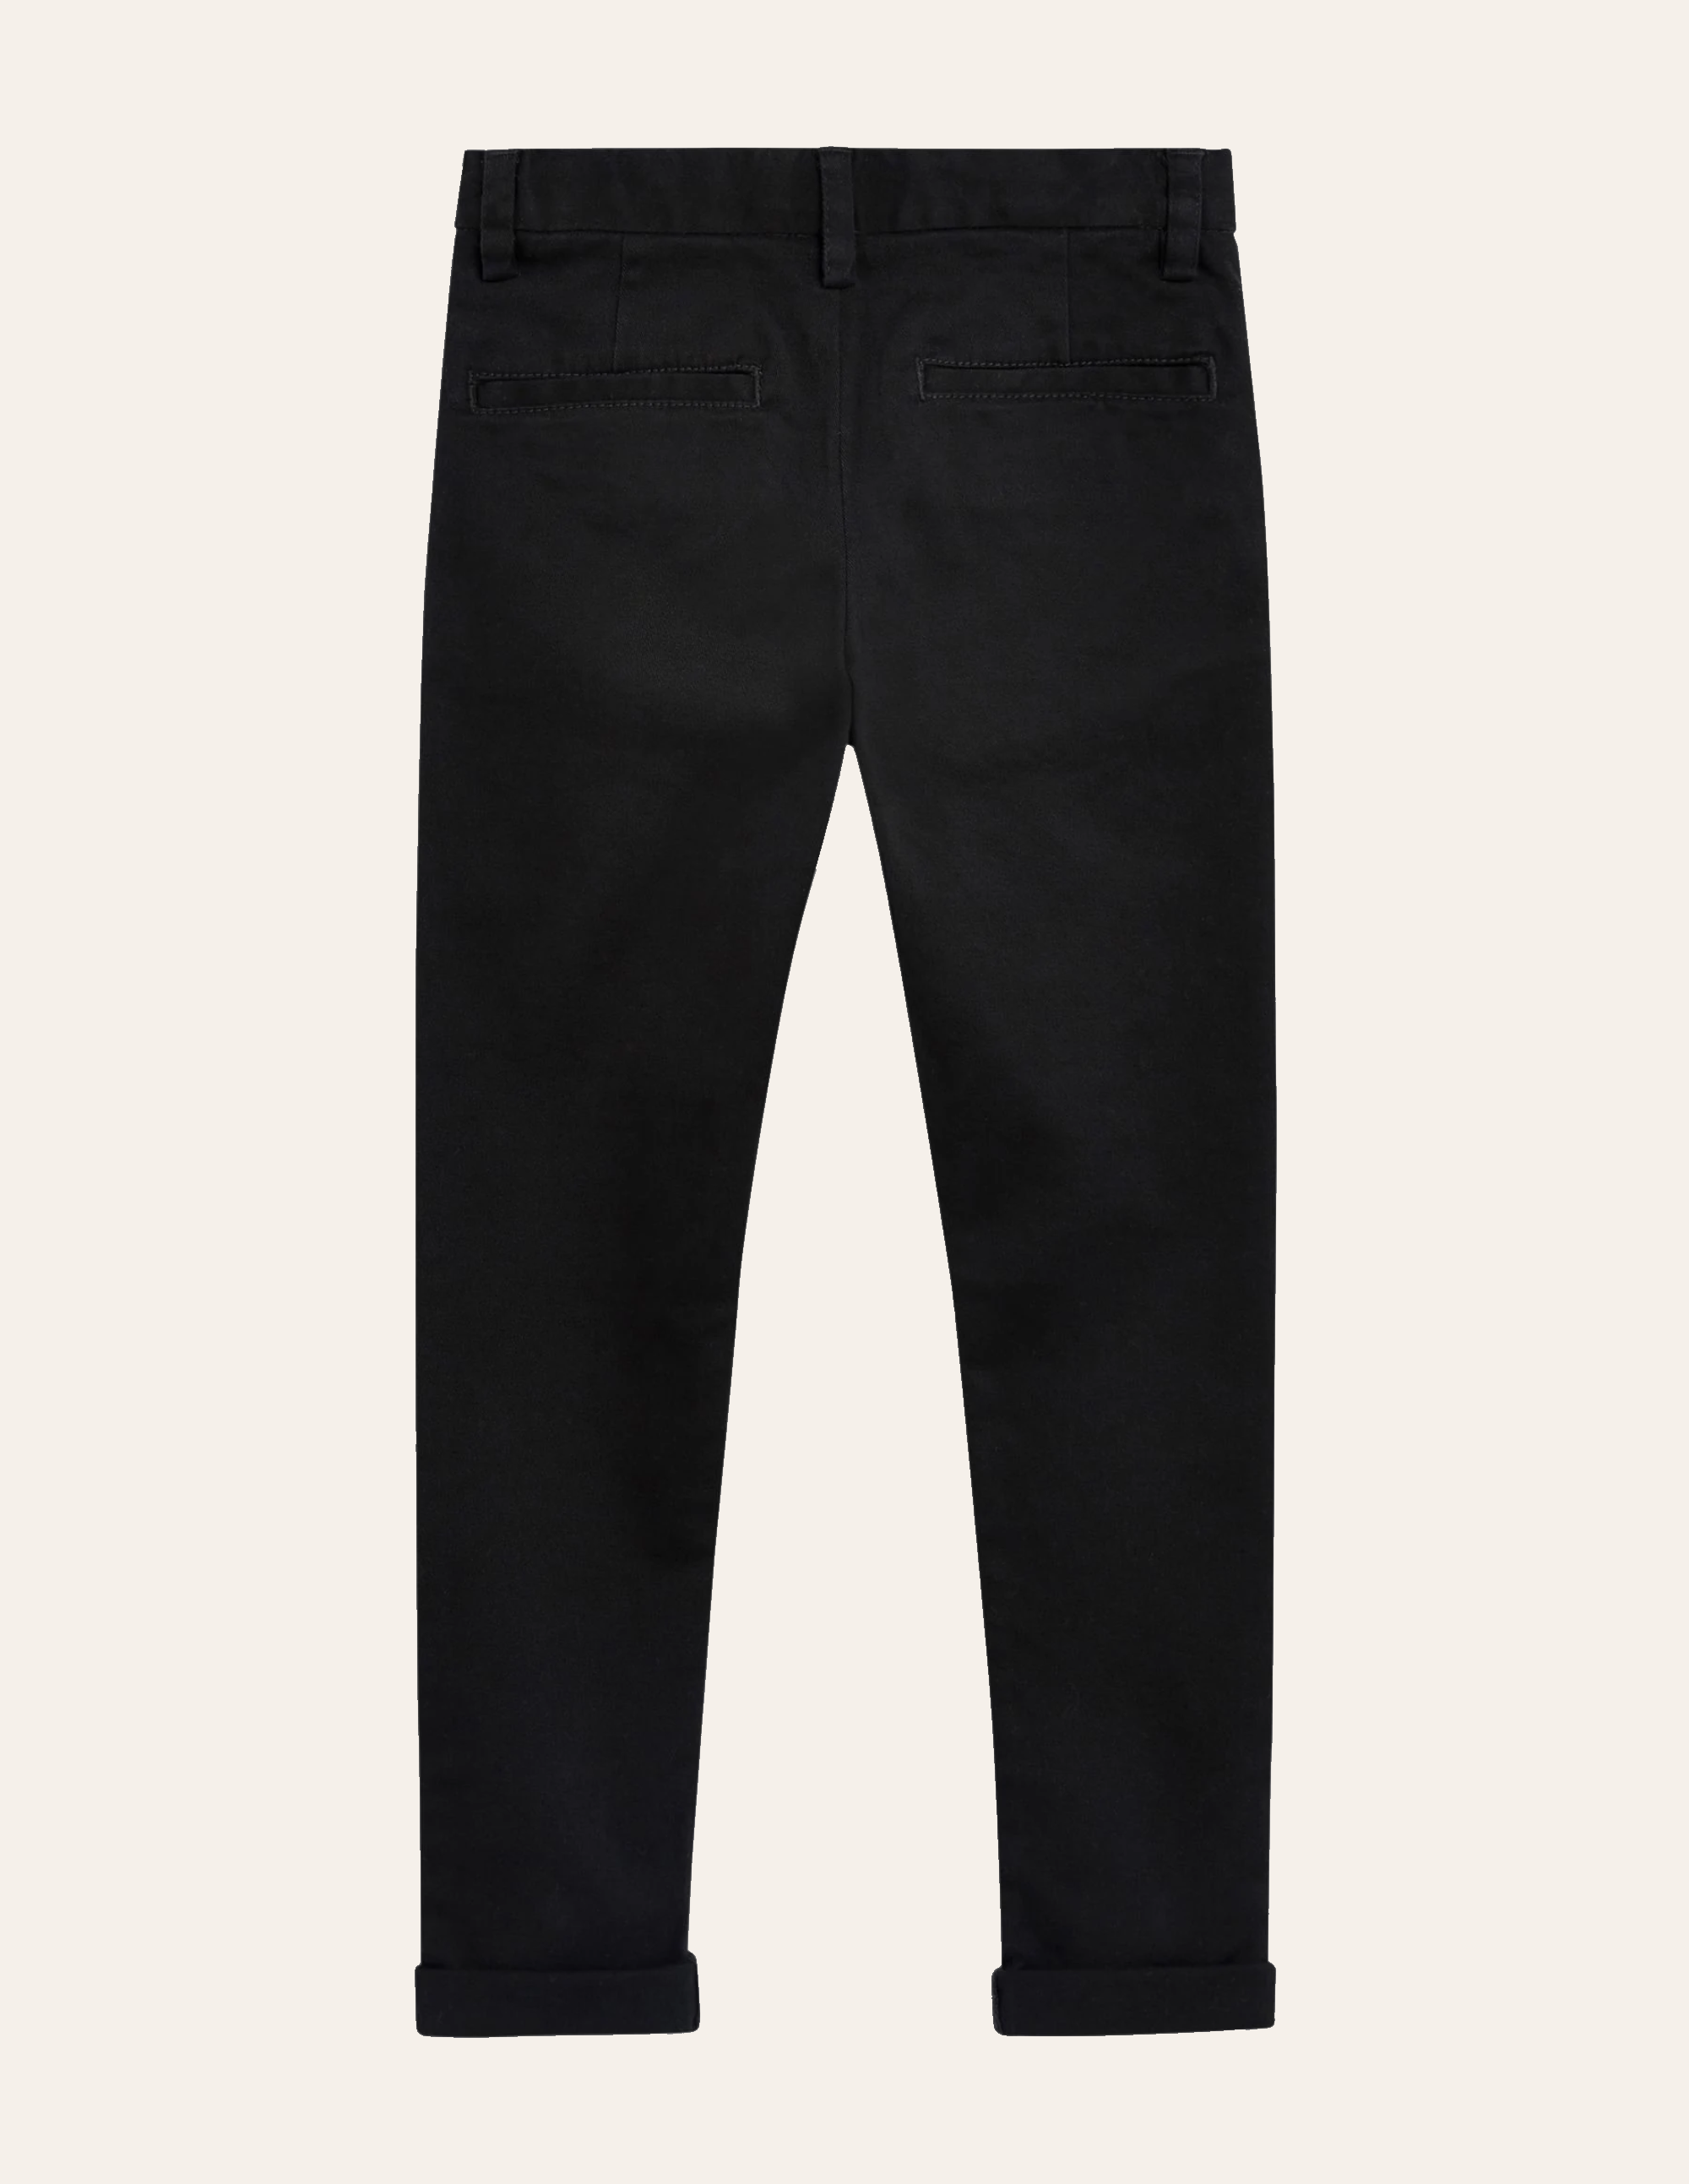 Black Casual Chino Pants